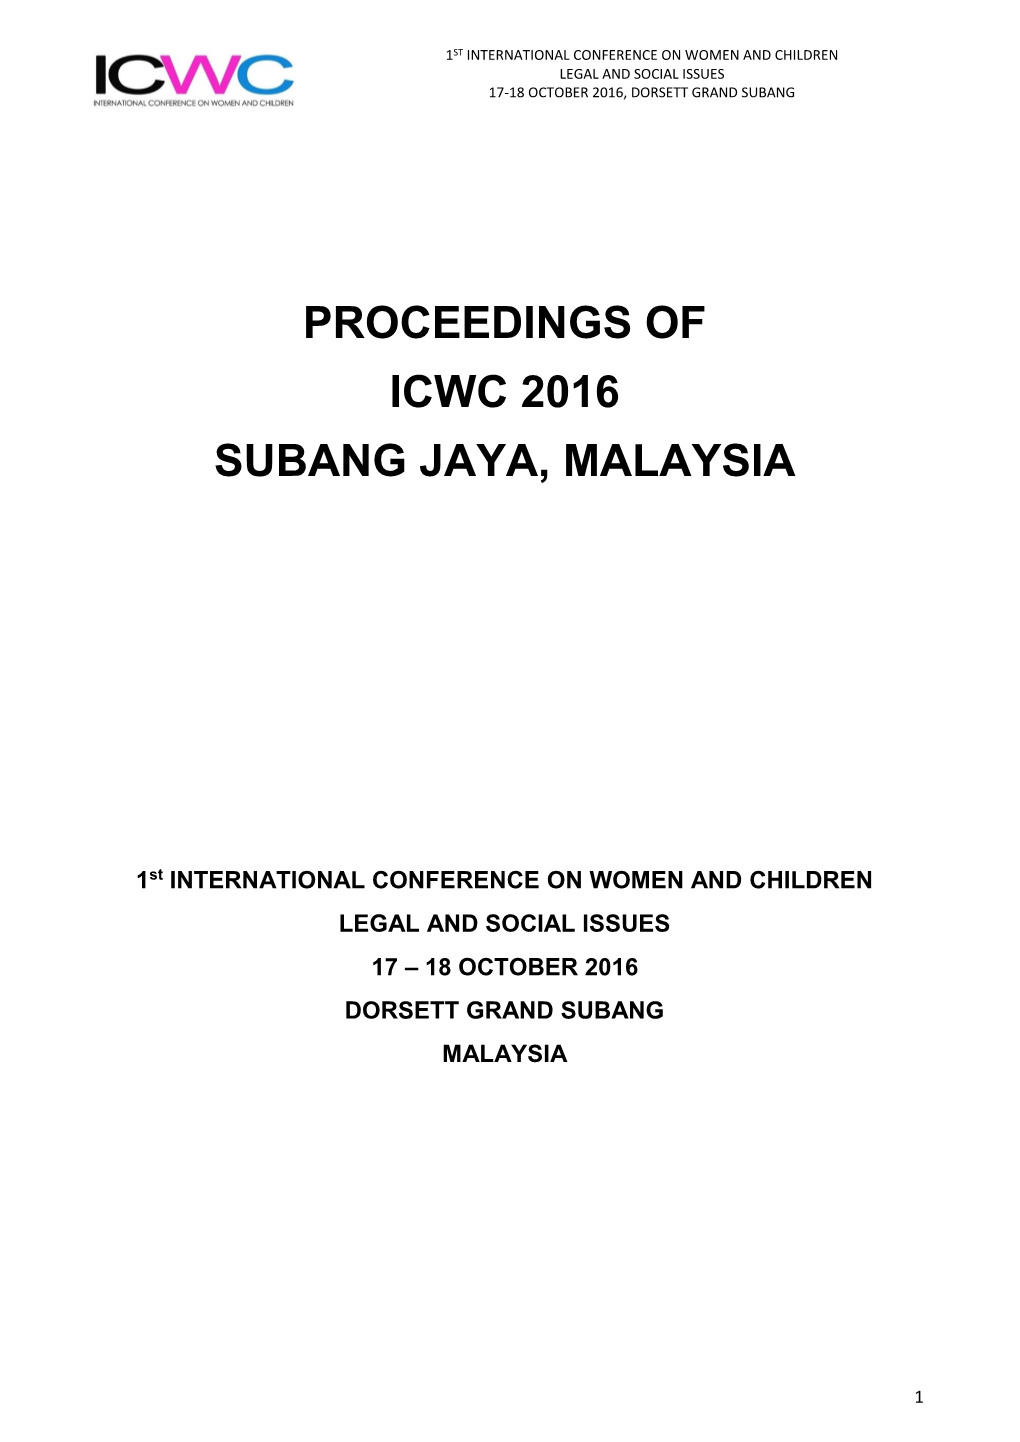 Proceedings of Icwc 2016 Subang Jaya, Malaysia